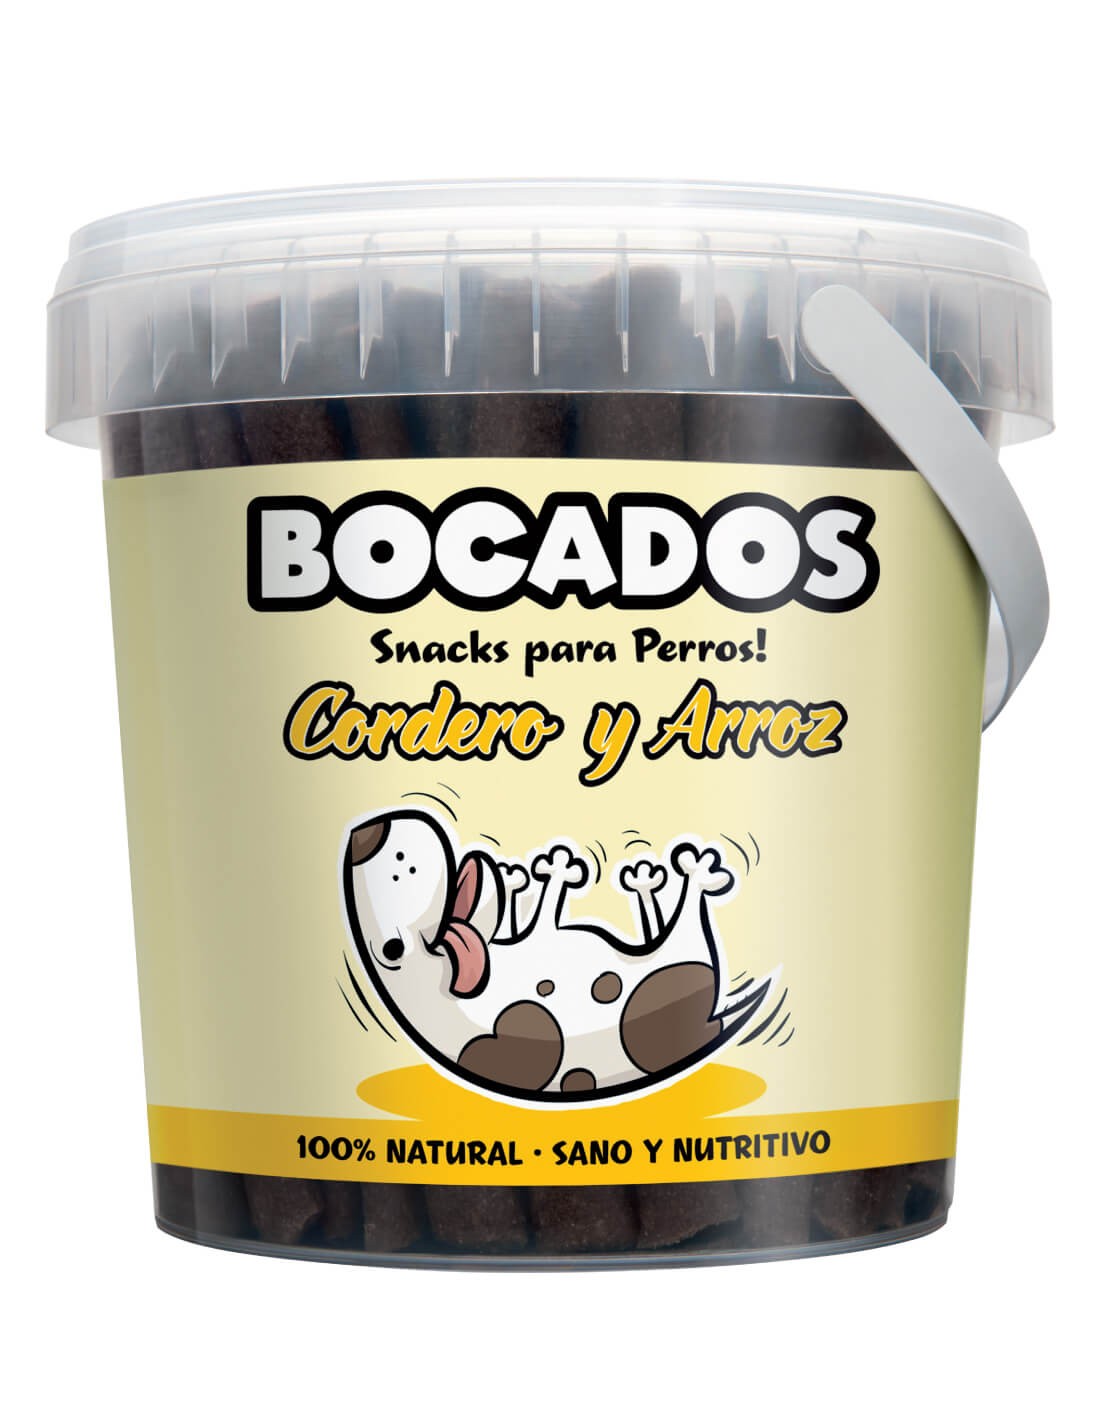 BOCADOS Cordero y Arroz 300g - Snack Natural para Perros